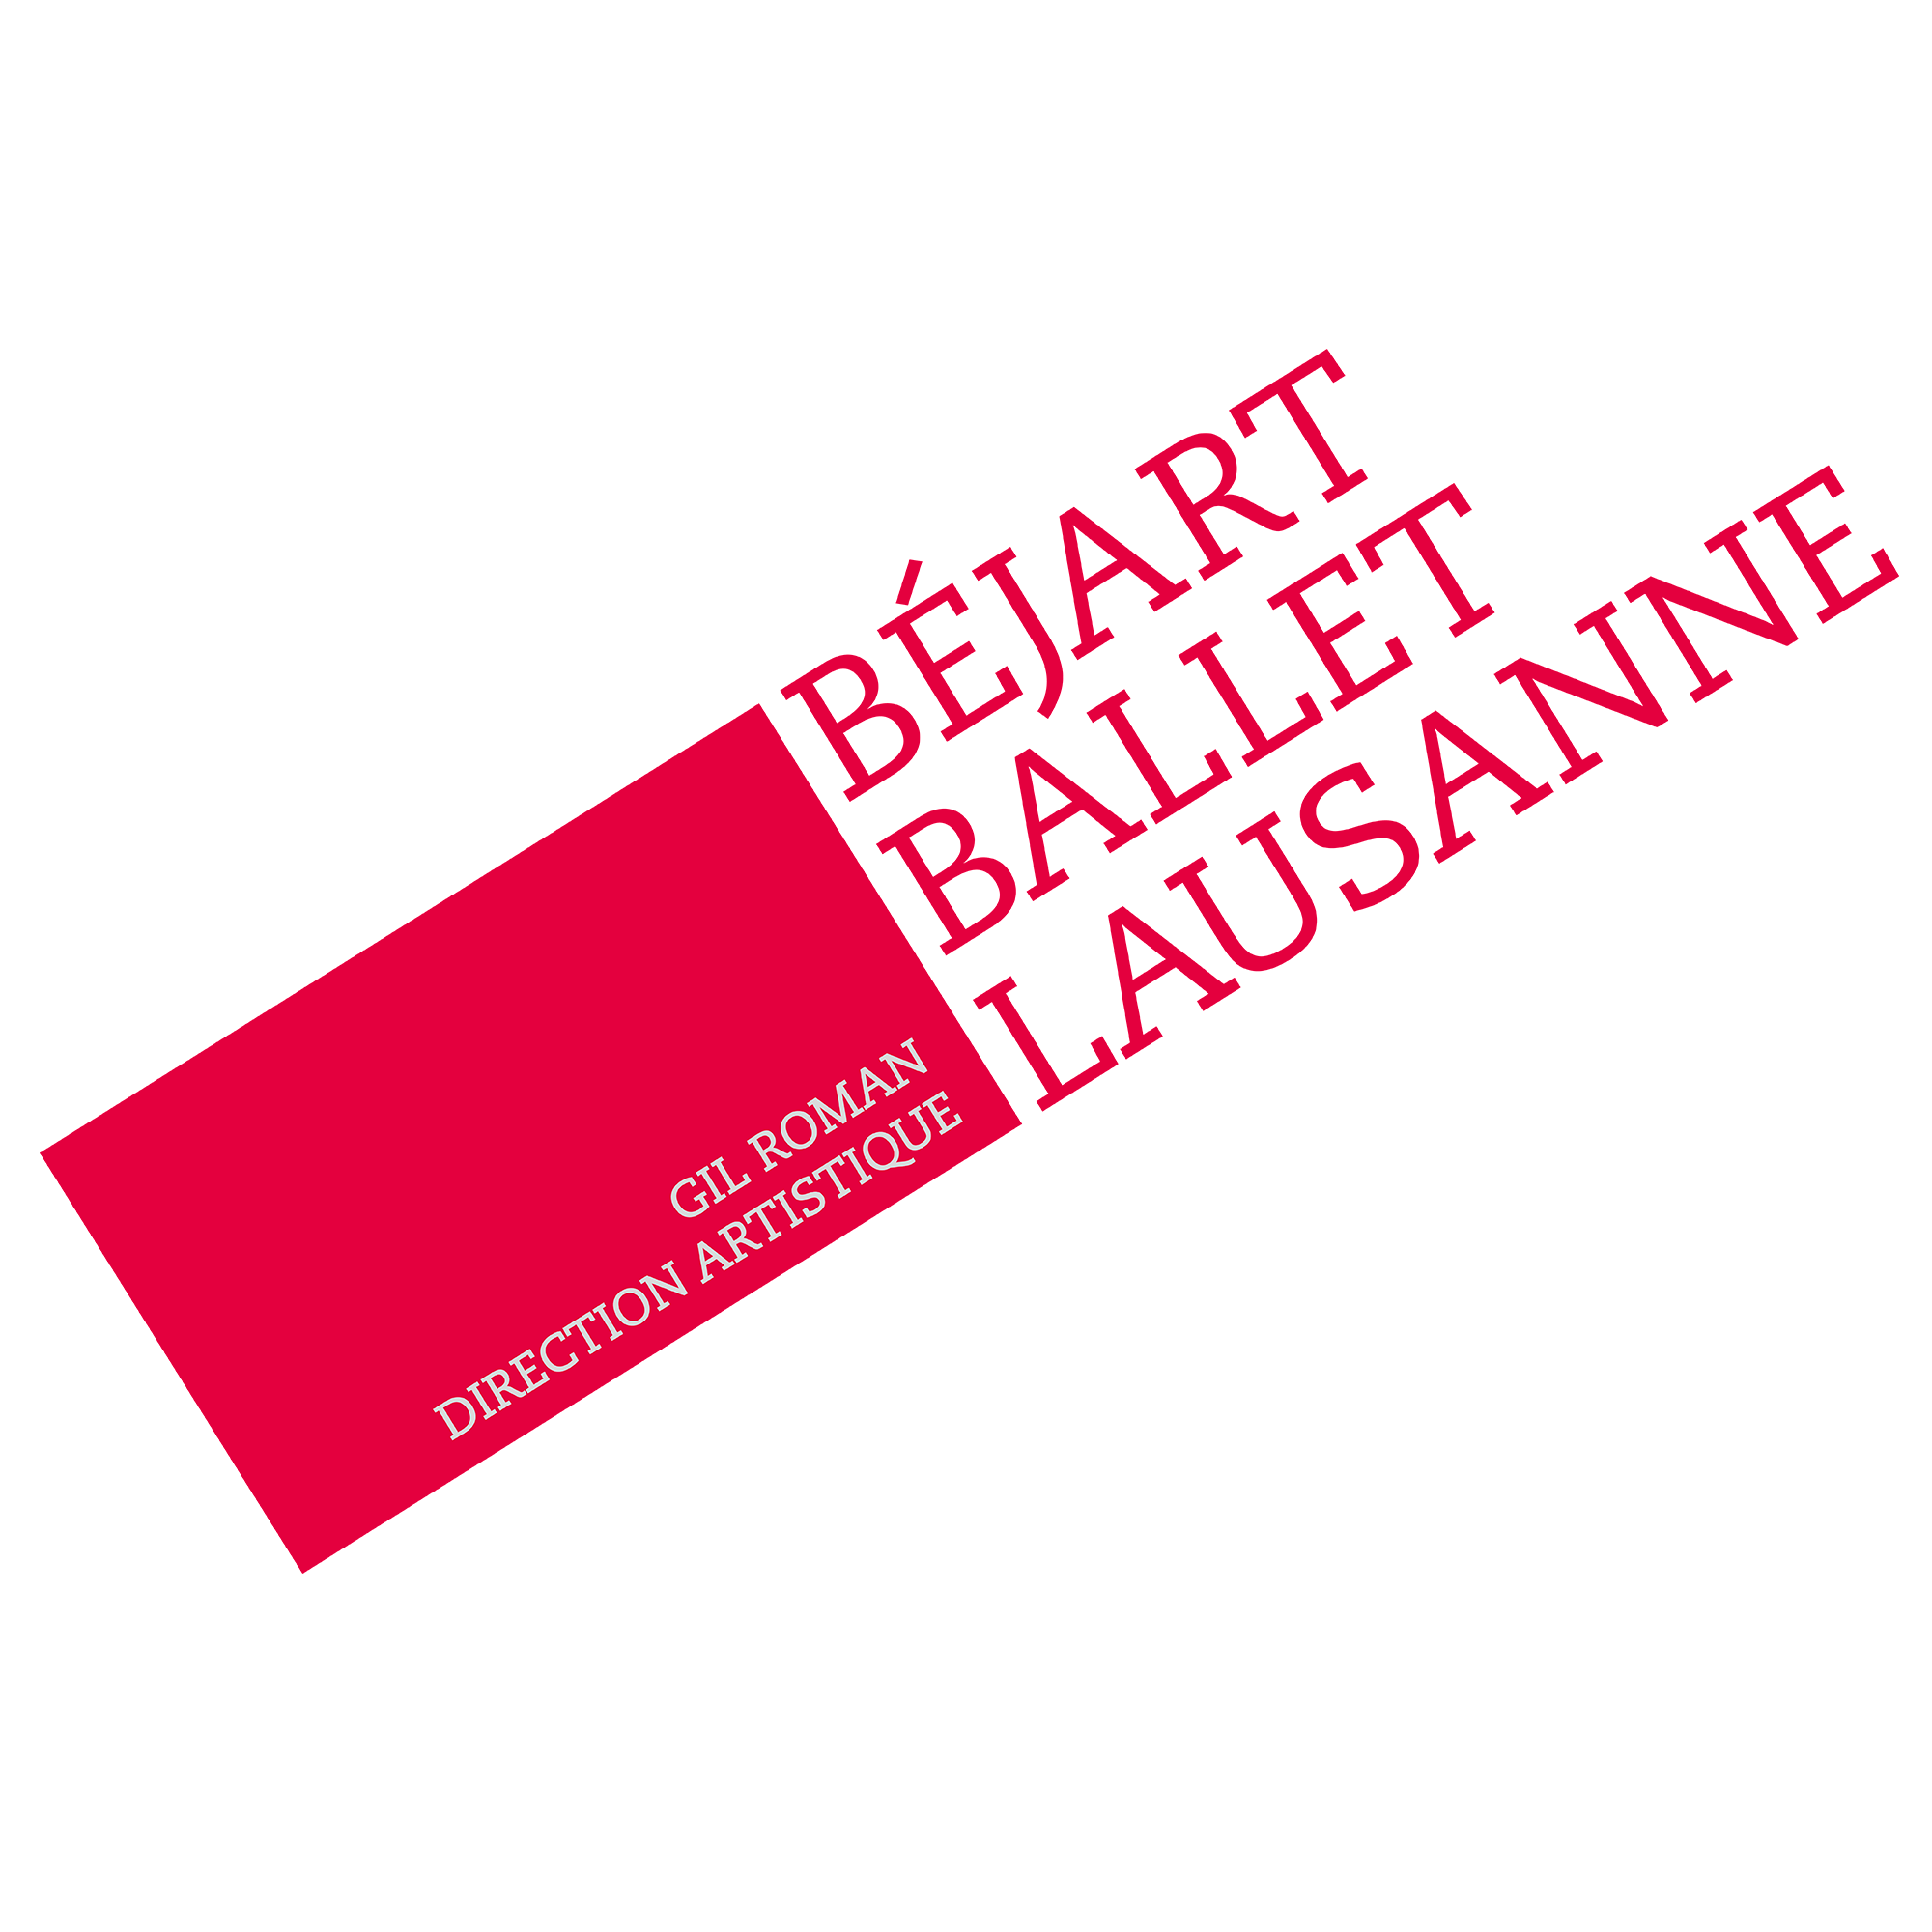 Le Ballet Béjart Lausanne recrute un responsable de diffusion et de rayonnement (h/f)